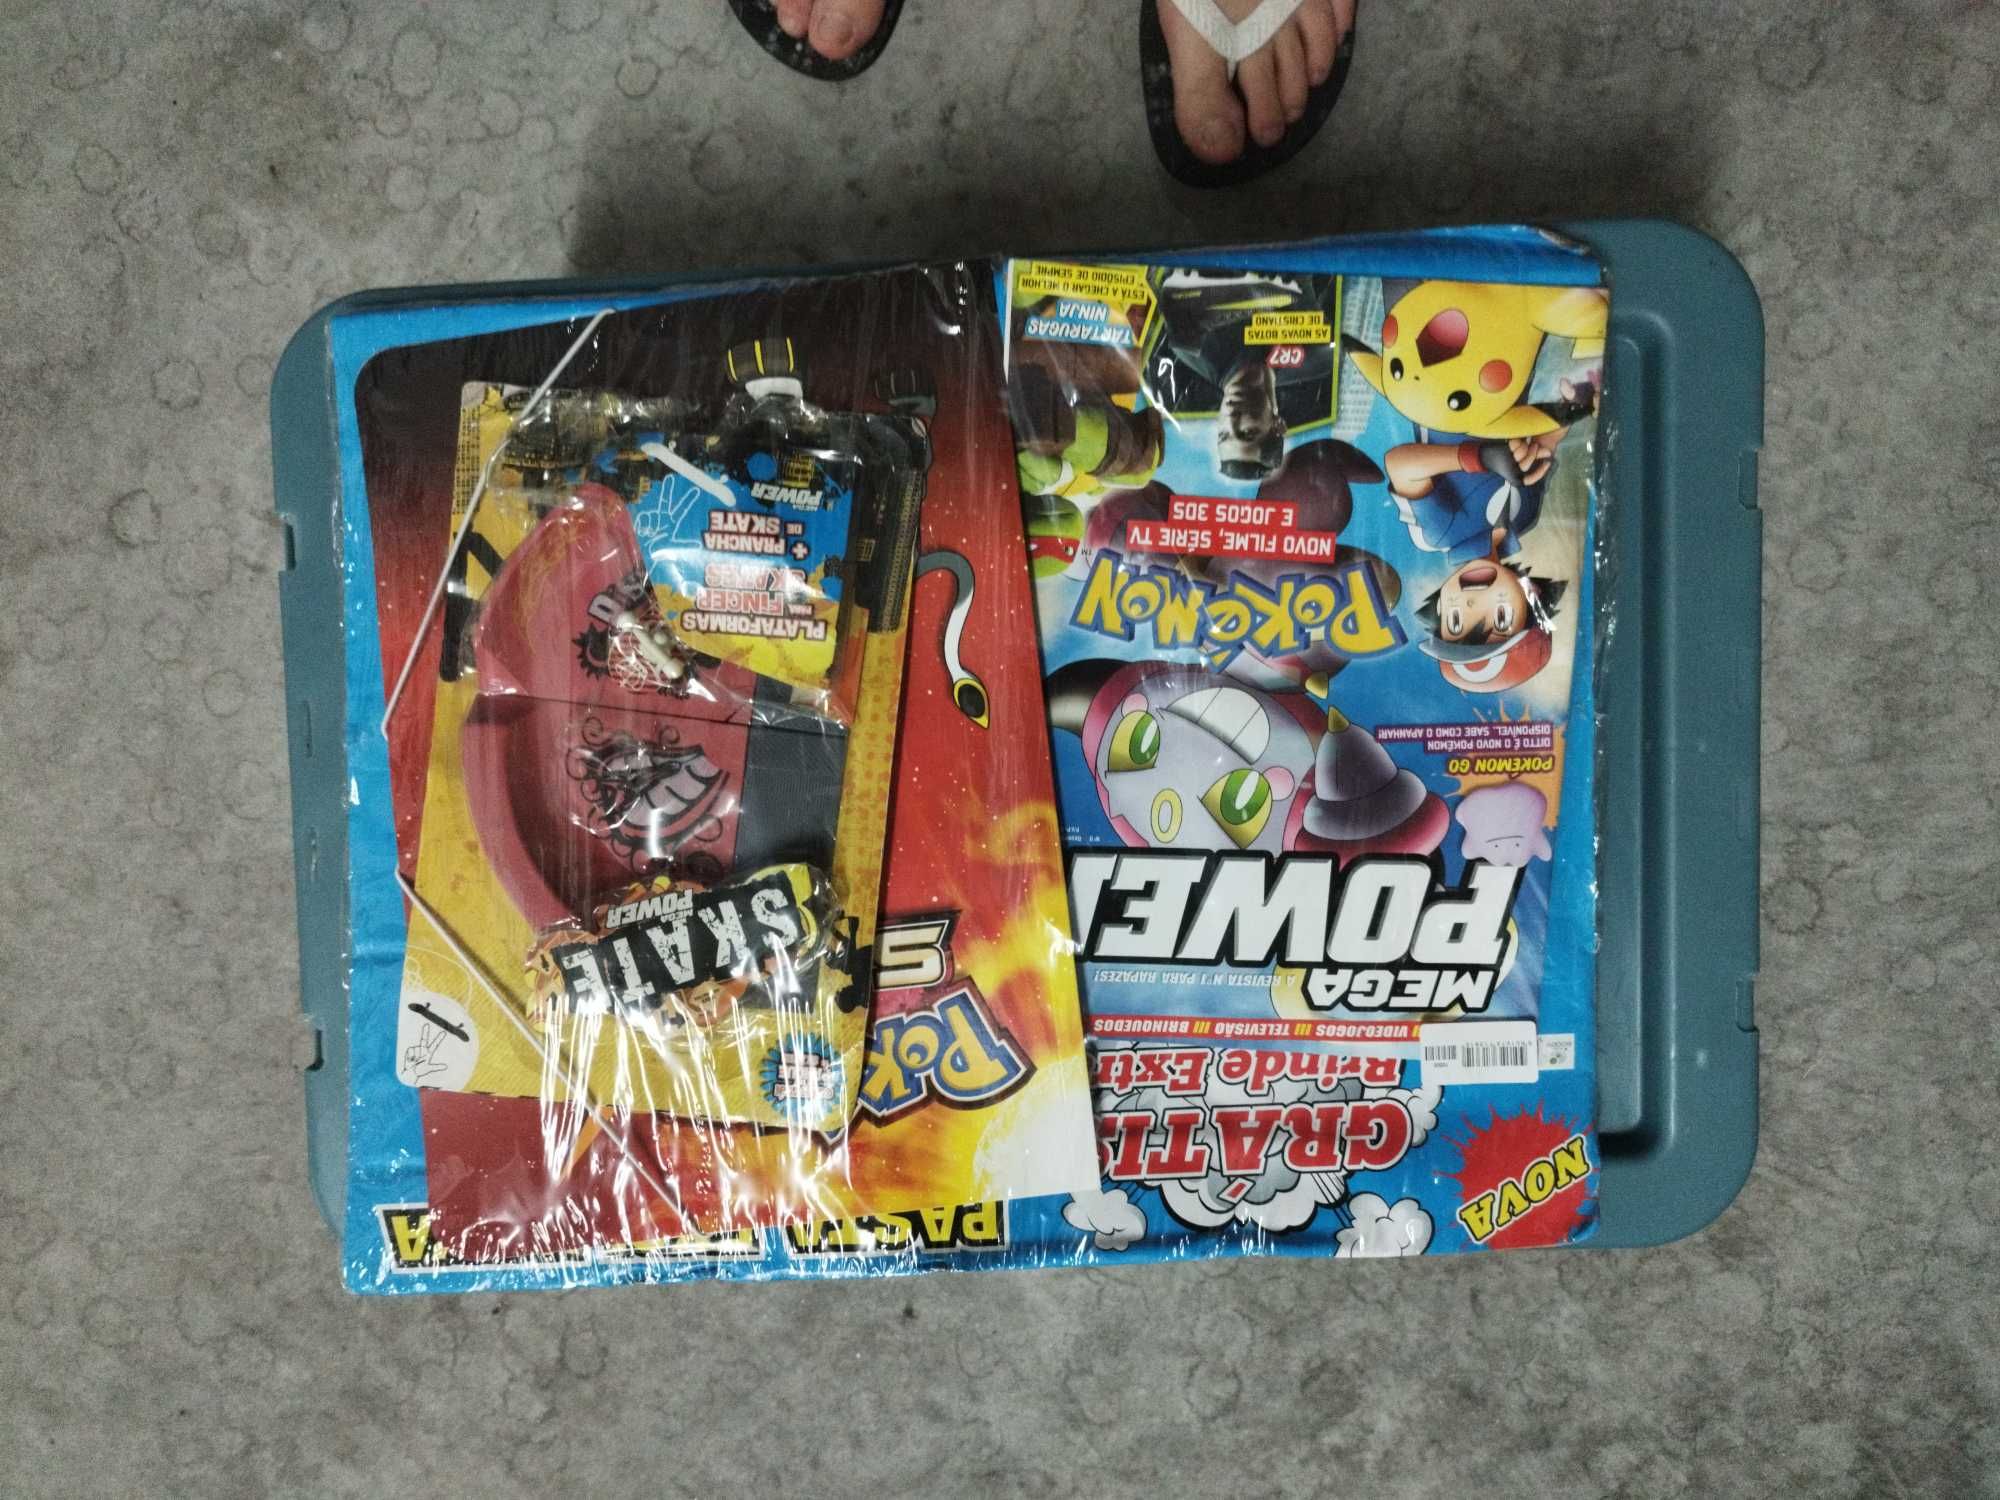 Pack de revistas seladas Mega Power com brinde + capa pokémon